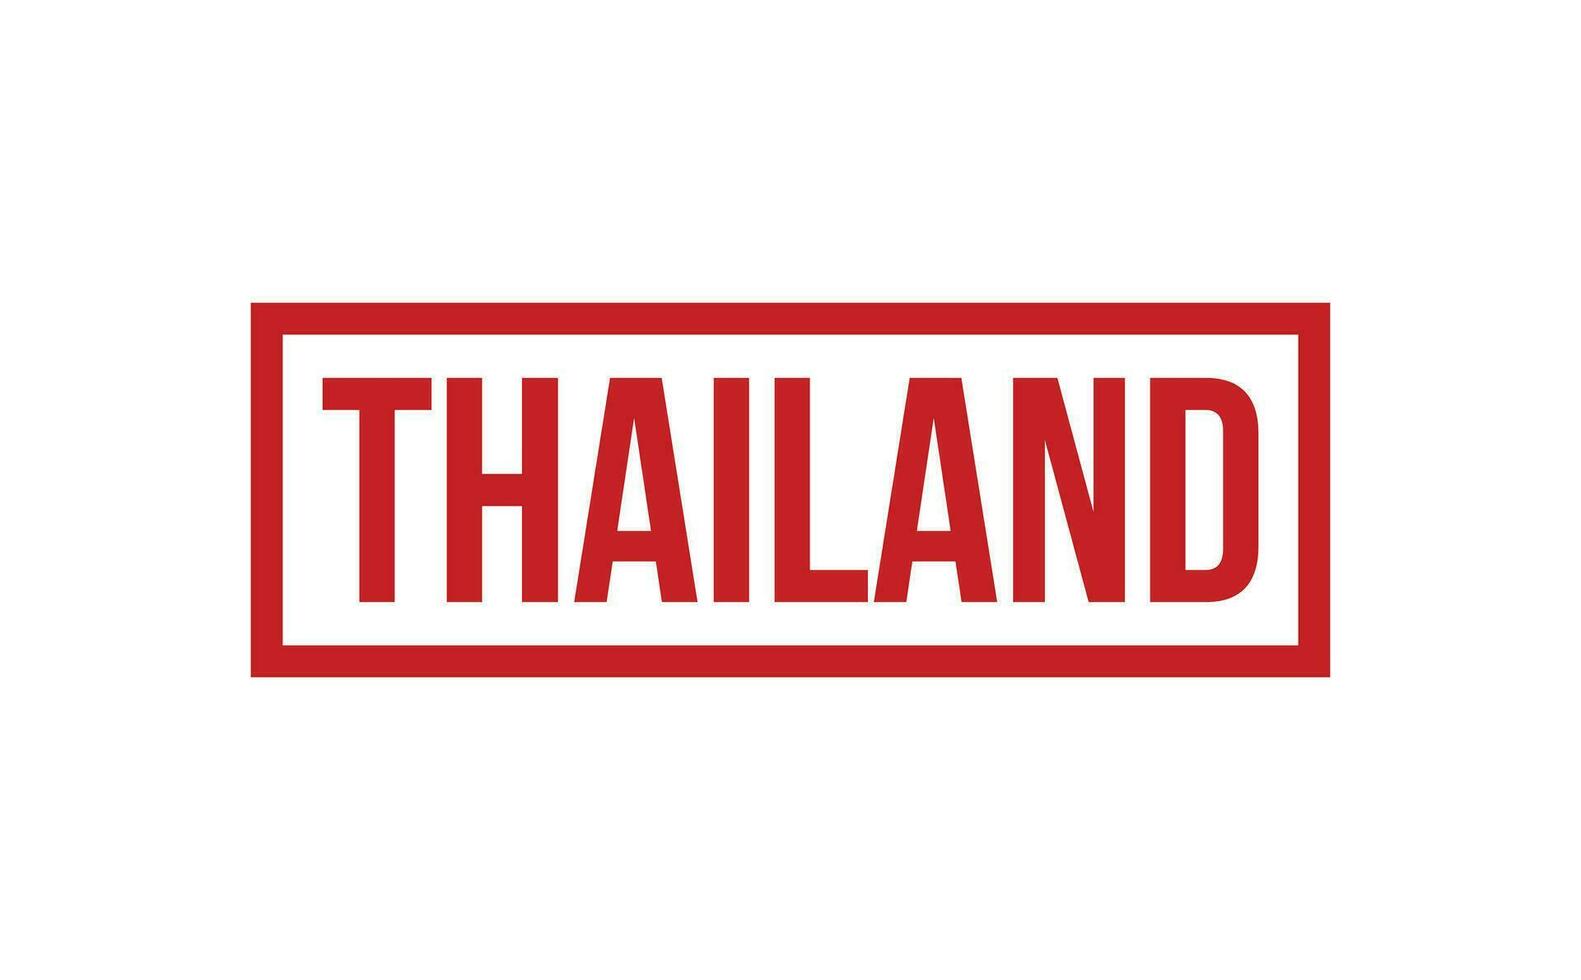 Tailandia caucho sello sello vector